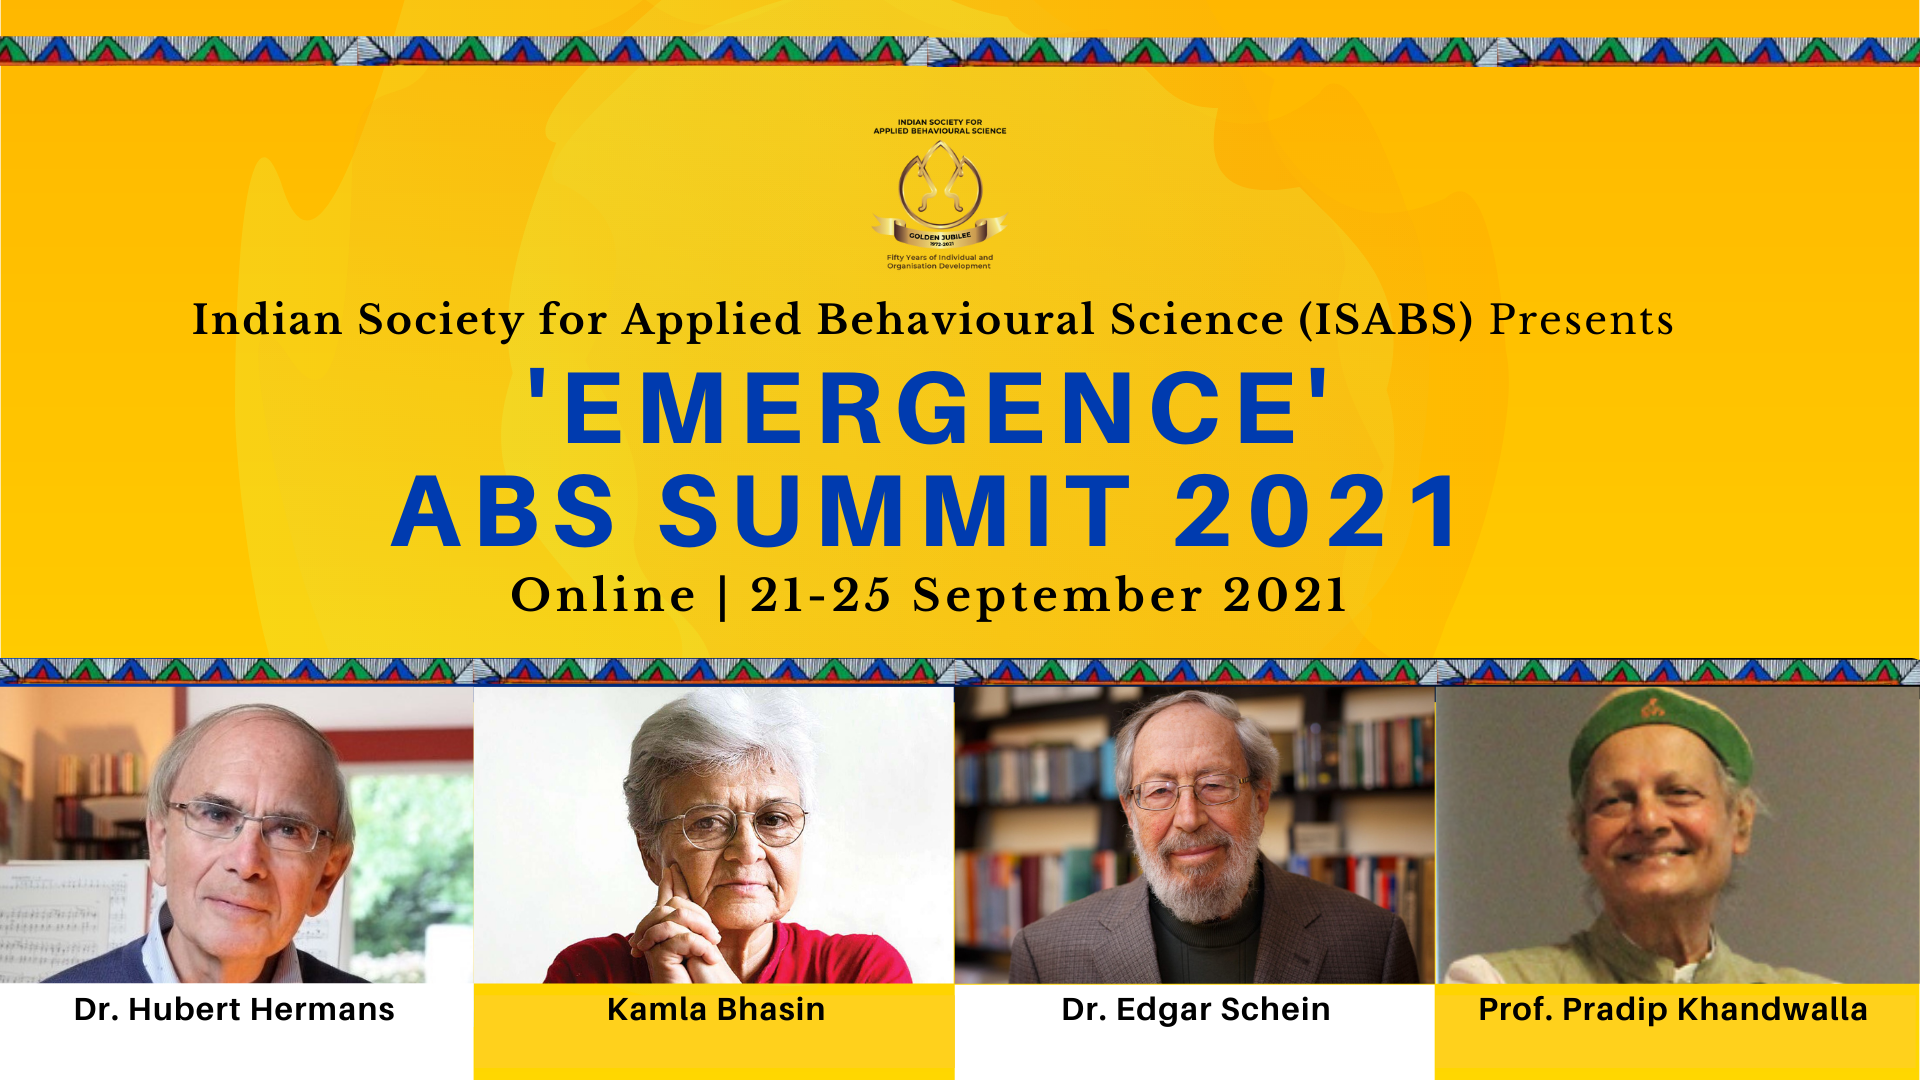 ABS Summit 2021, New Delhi, Delhi, India